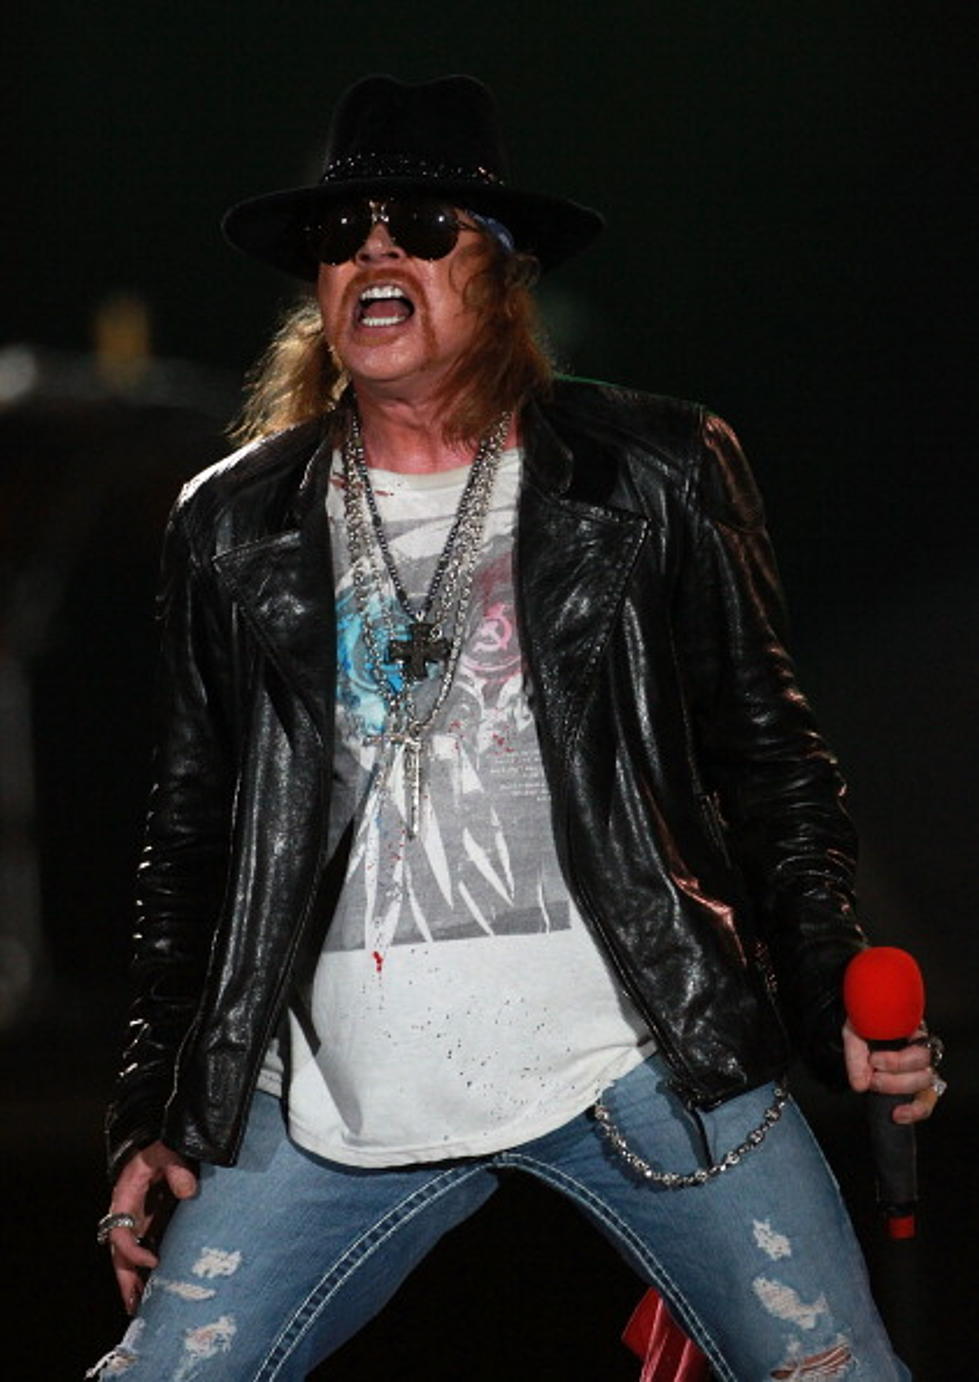 Guns N’ Roses Rumored Tour Dates? HM………